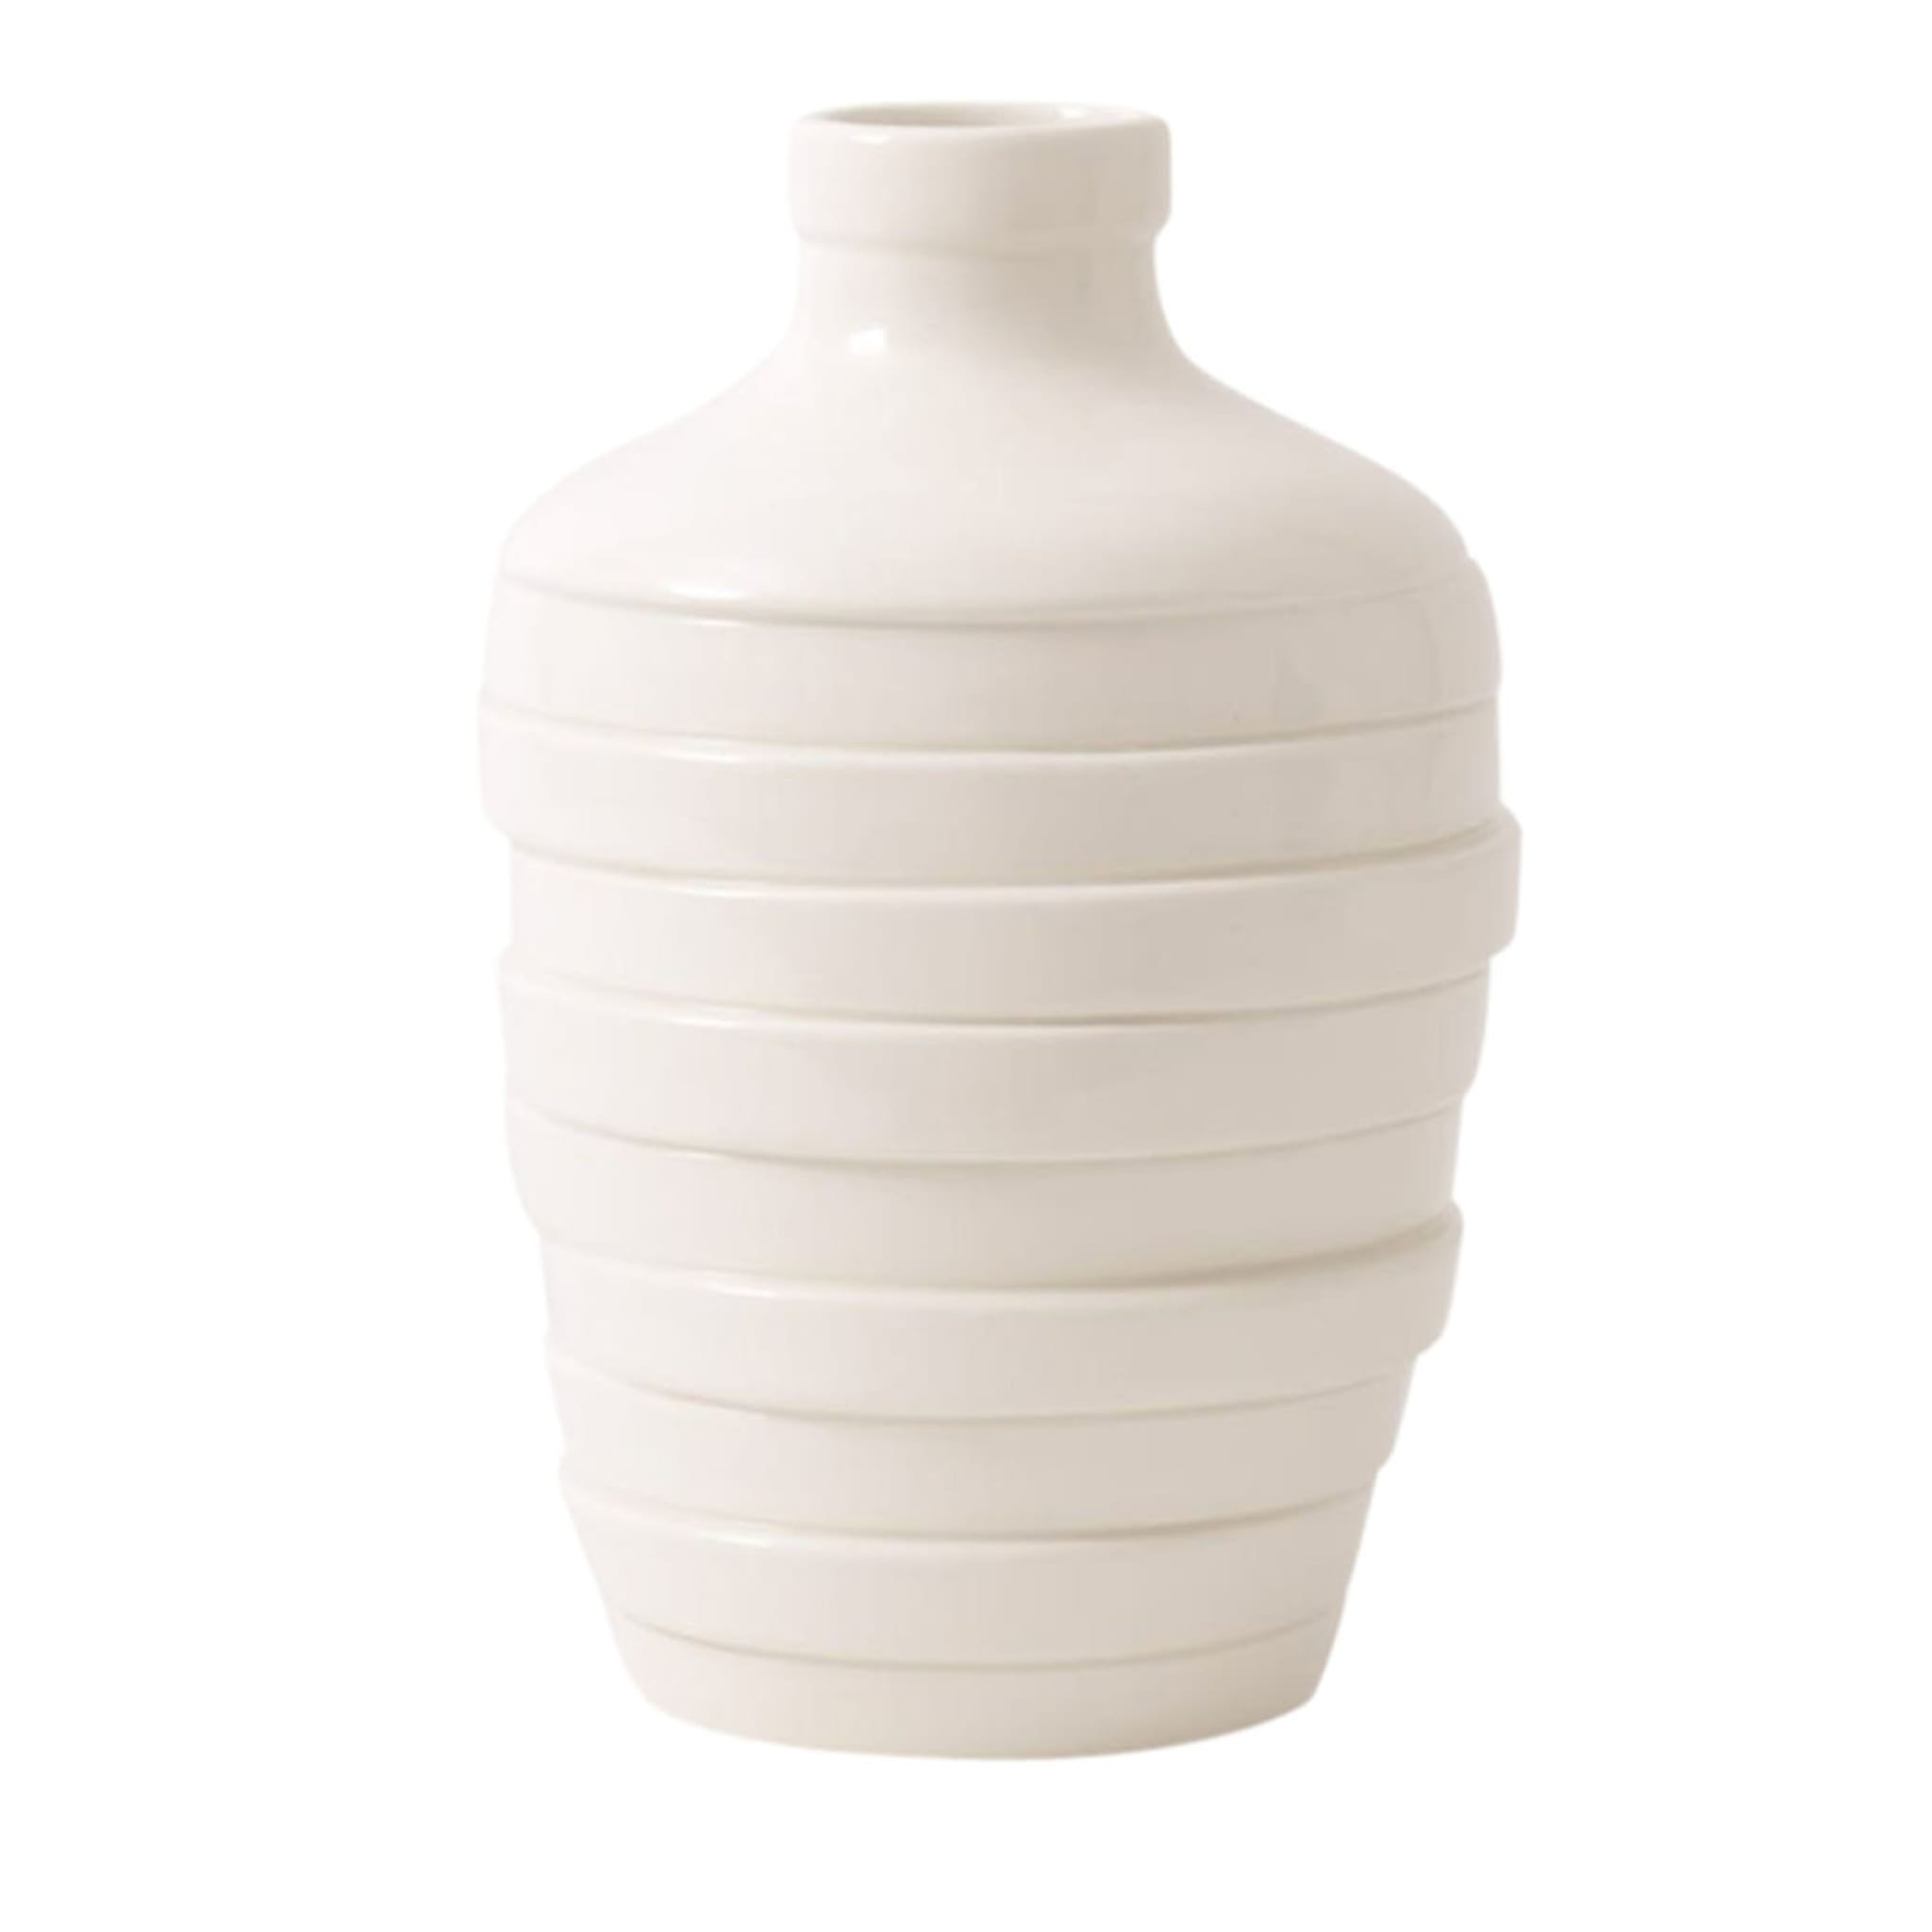 Gioia Small White Vase - Main view